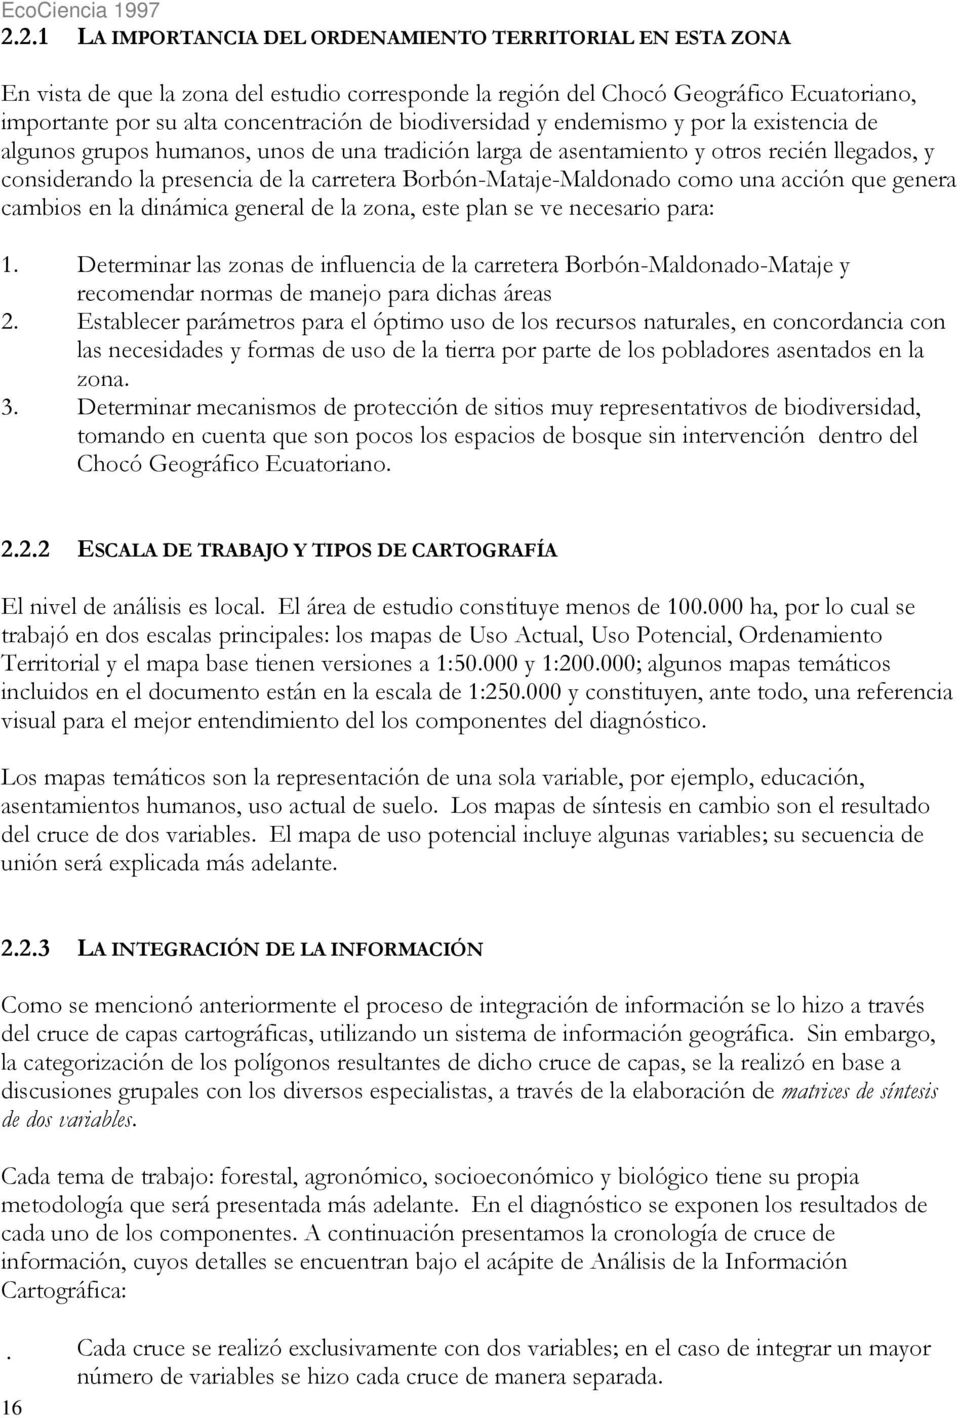 Borbón-Mataje-Maldonado como una acción que genera cambios en la dinámica general de la zona, este plan se ve necesario para: 1.